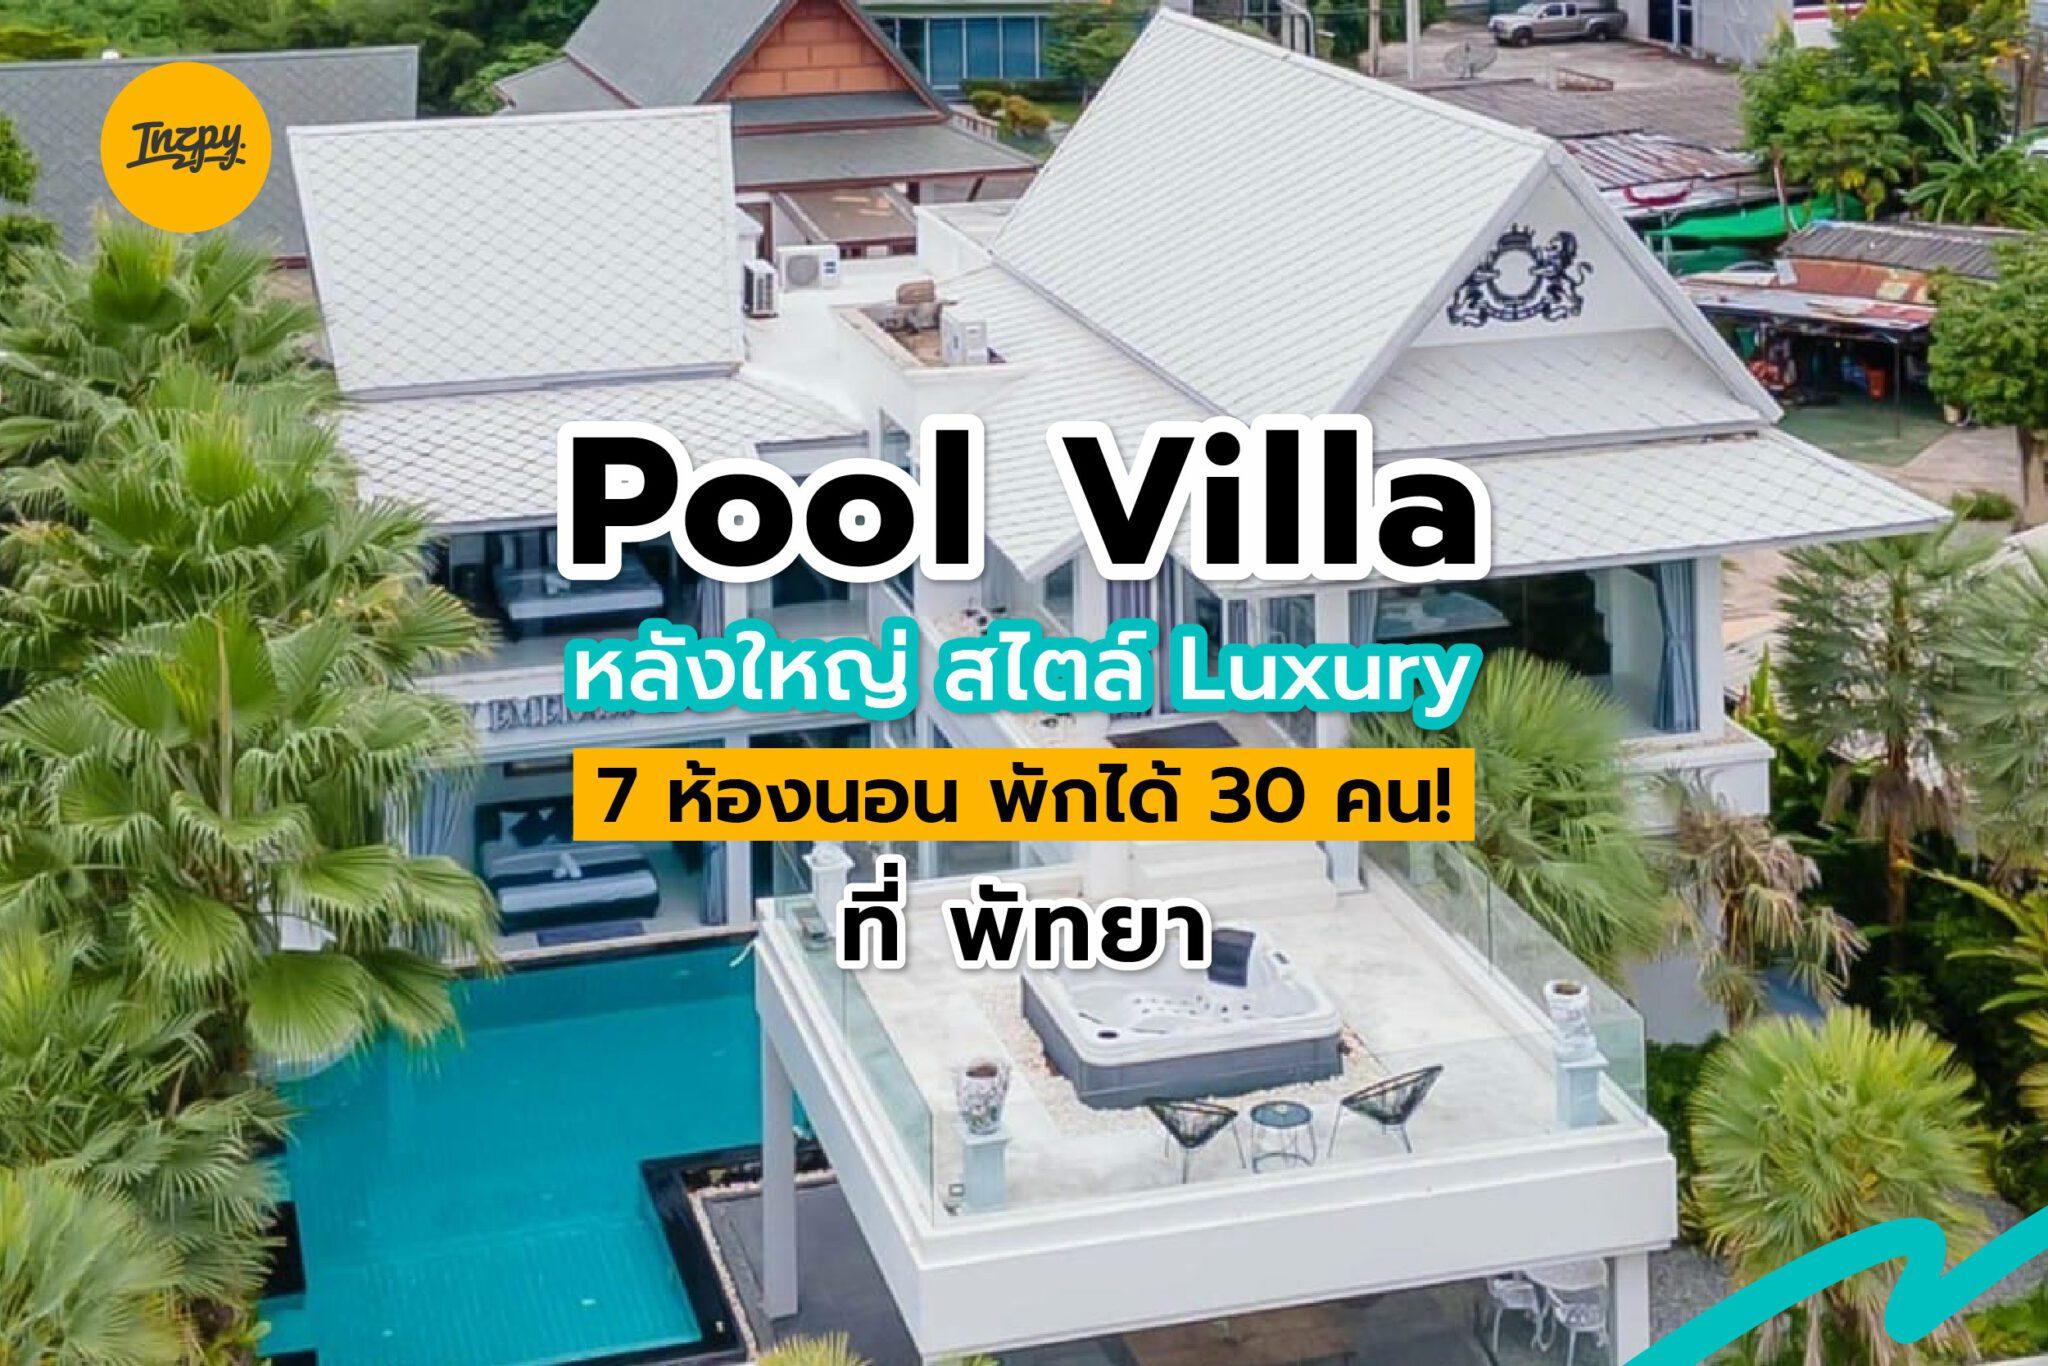 Pool Villa หลังใหญ่ สไตล์ Luxury 7 ห้องนอน พักได้ 30 คน เปิดใหม่